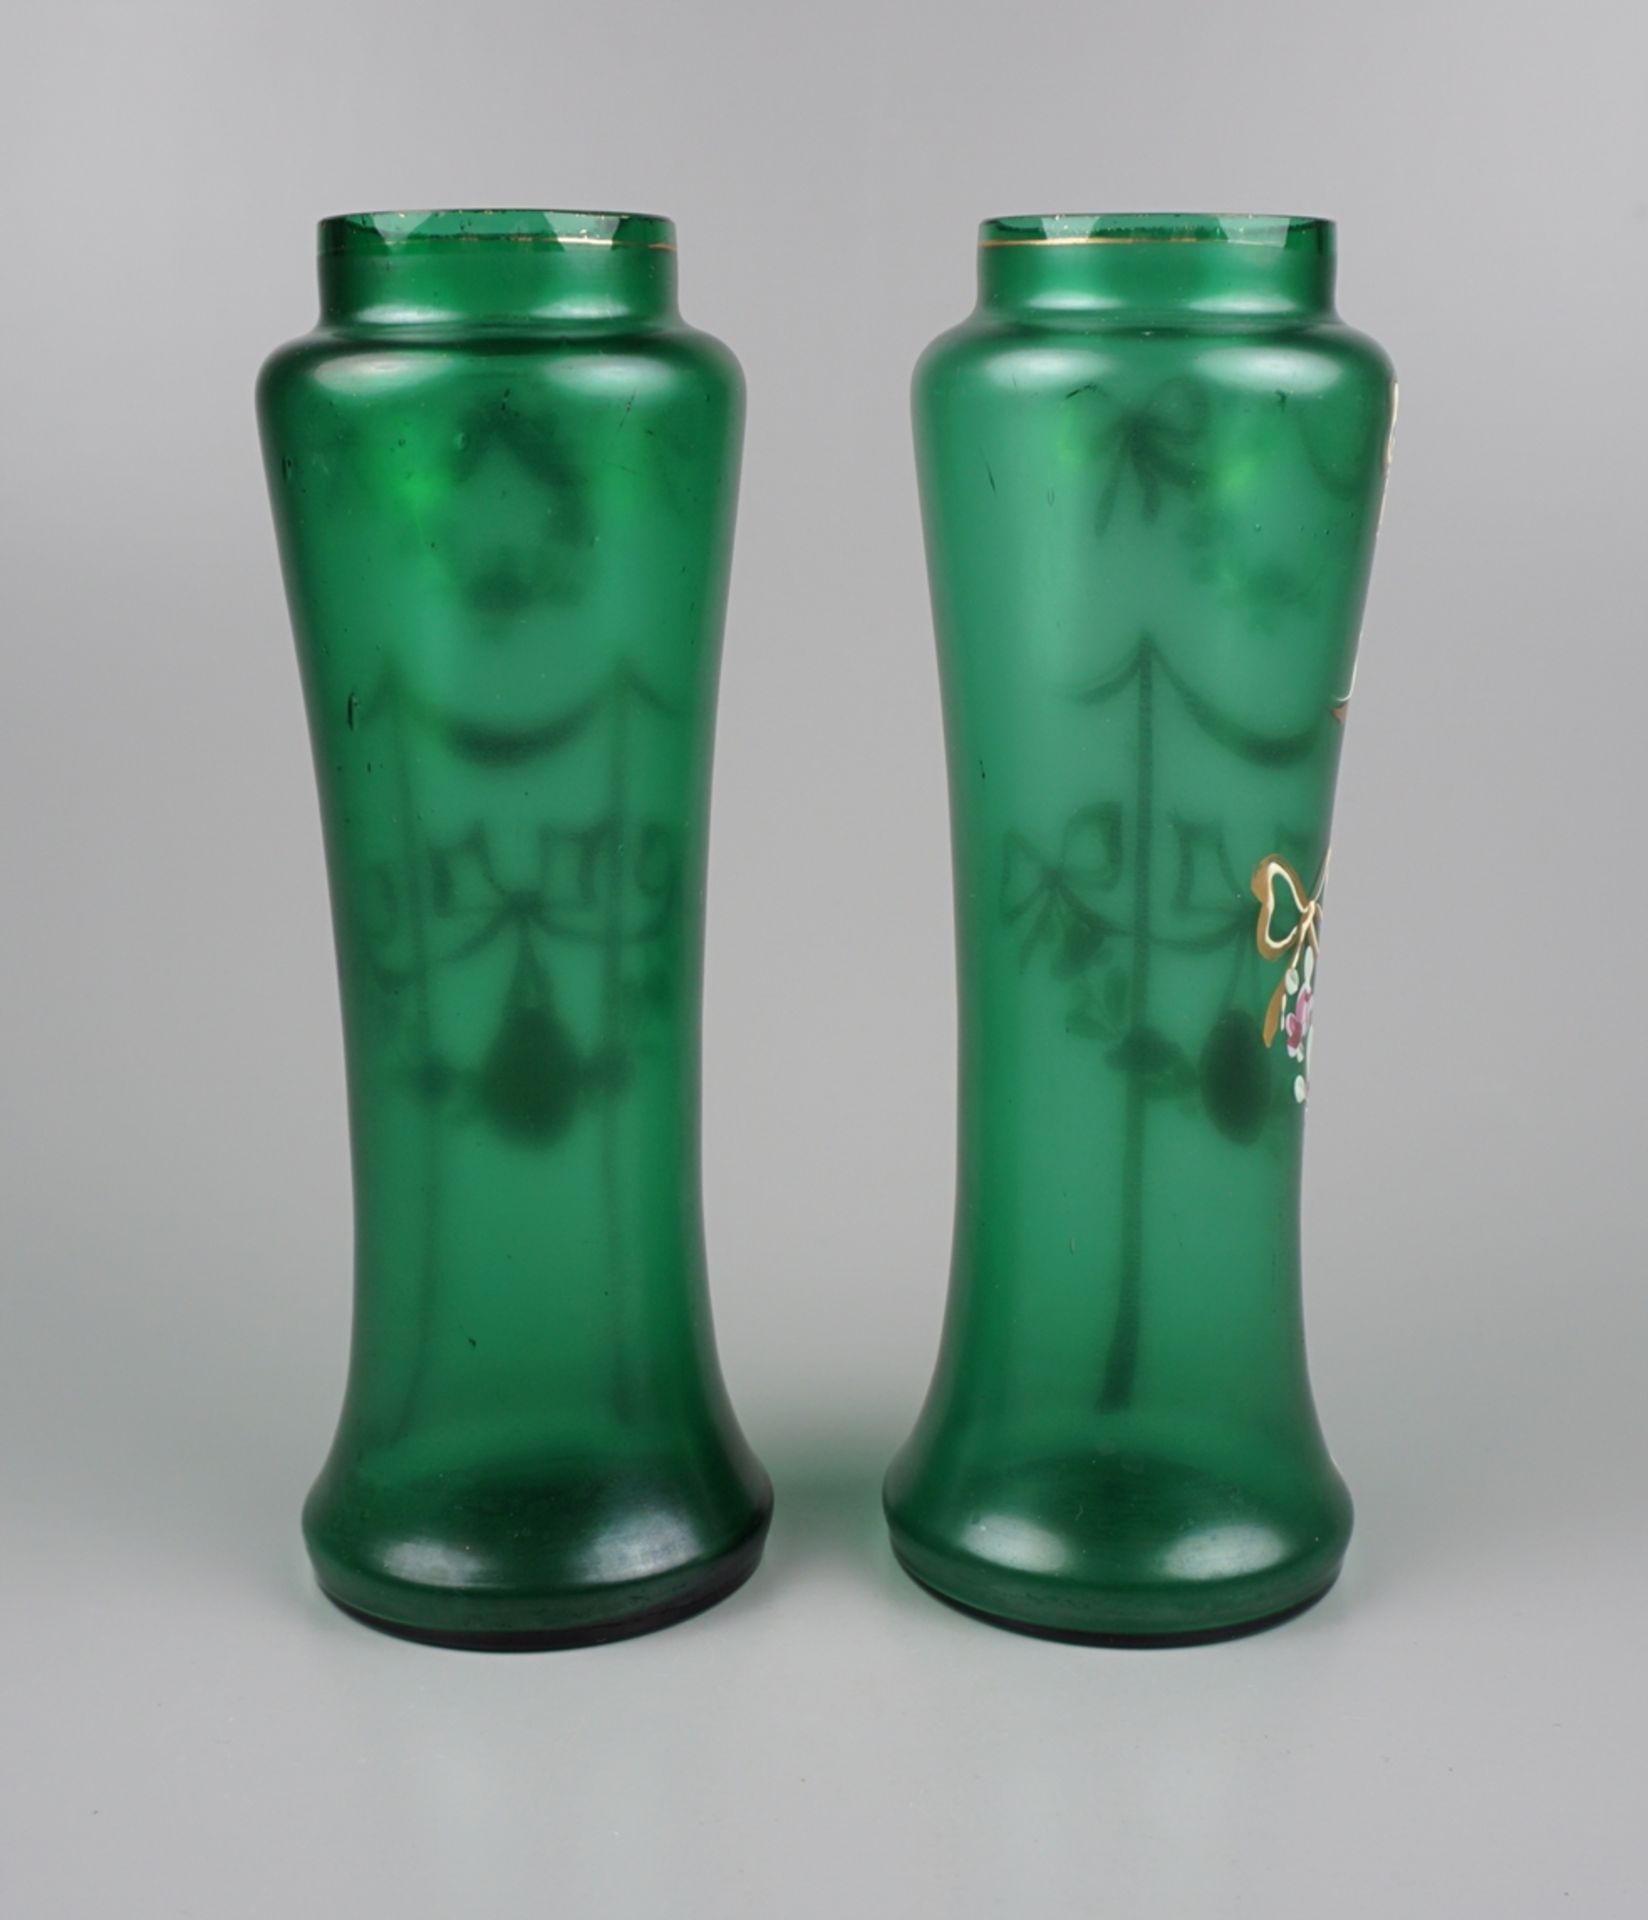 Paar Vasen aus Grünglas mit Emaille-Malerei, Jugendstil, um 1900, H.15,8cm - Bild 2 aus 2